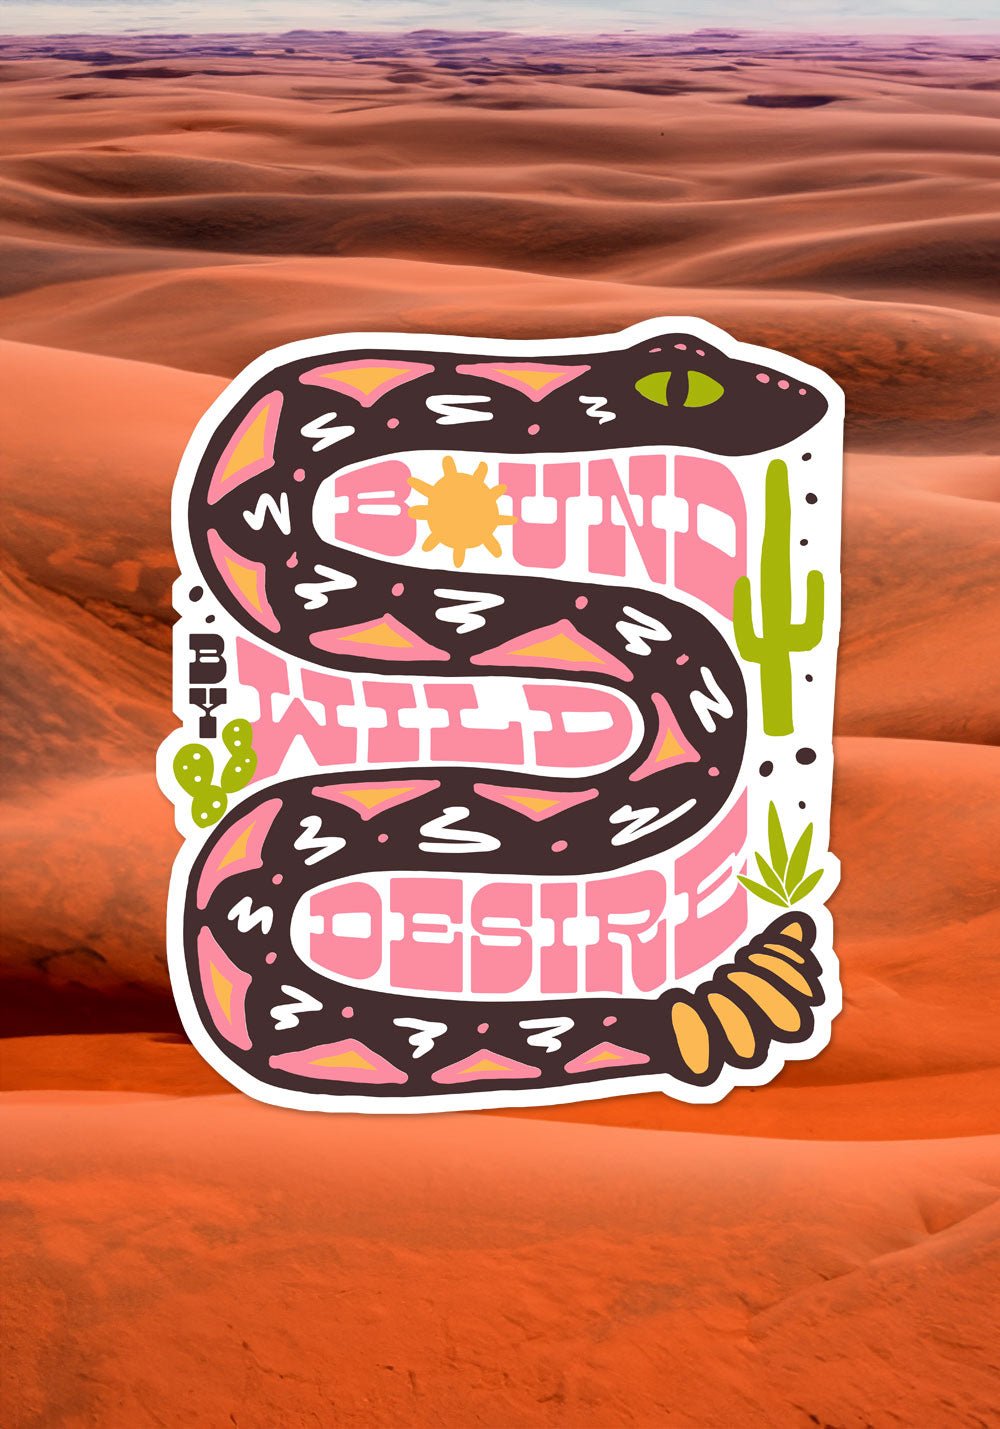 Bound By Wild Desire Sticker by kaeraz arizona cactus desert